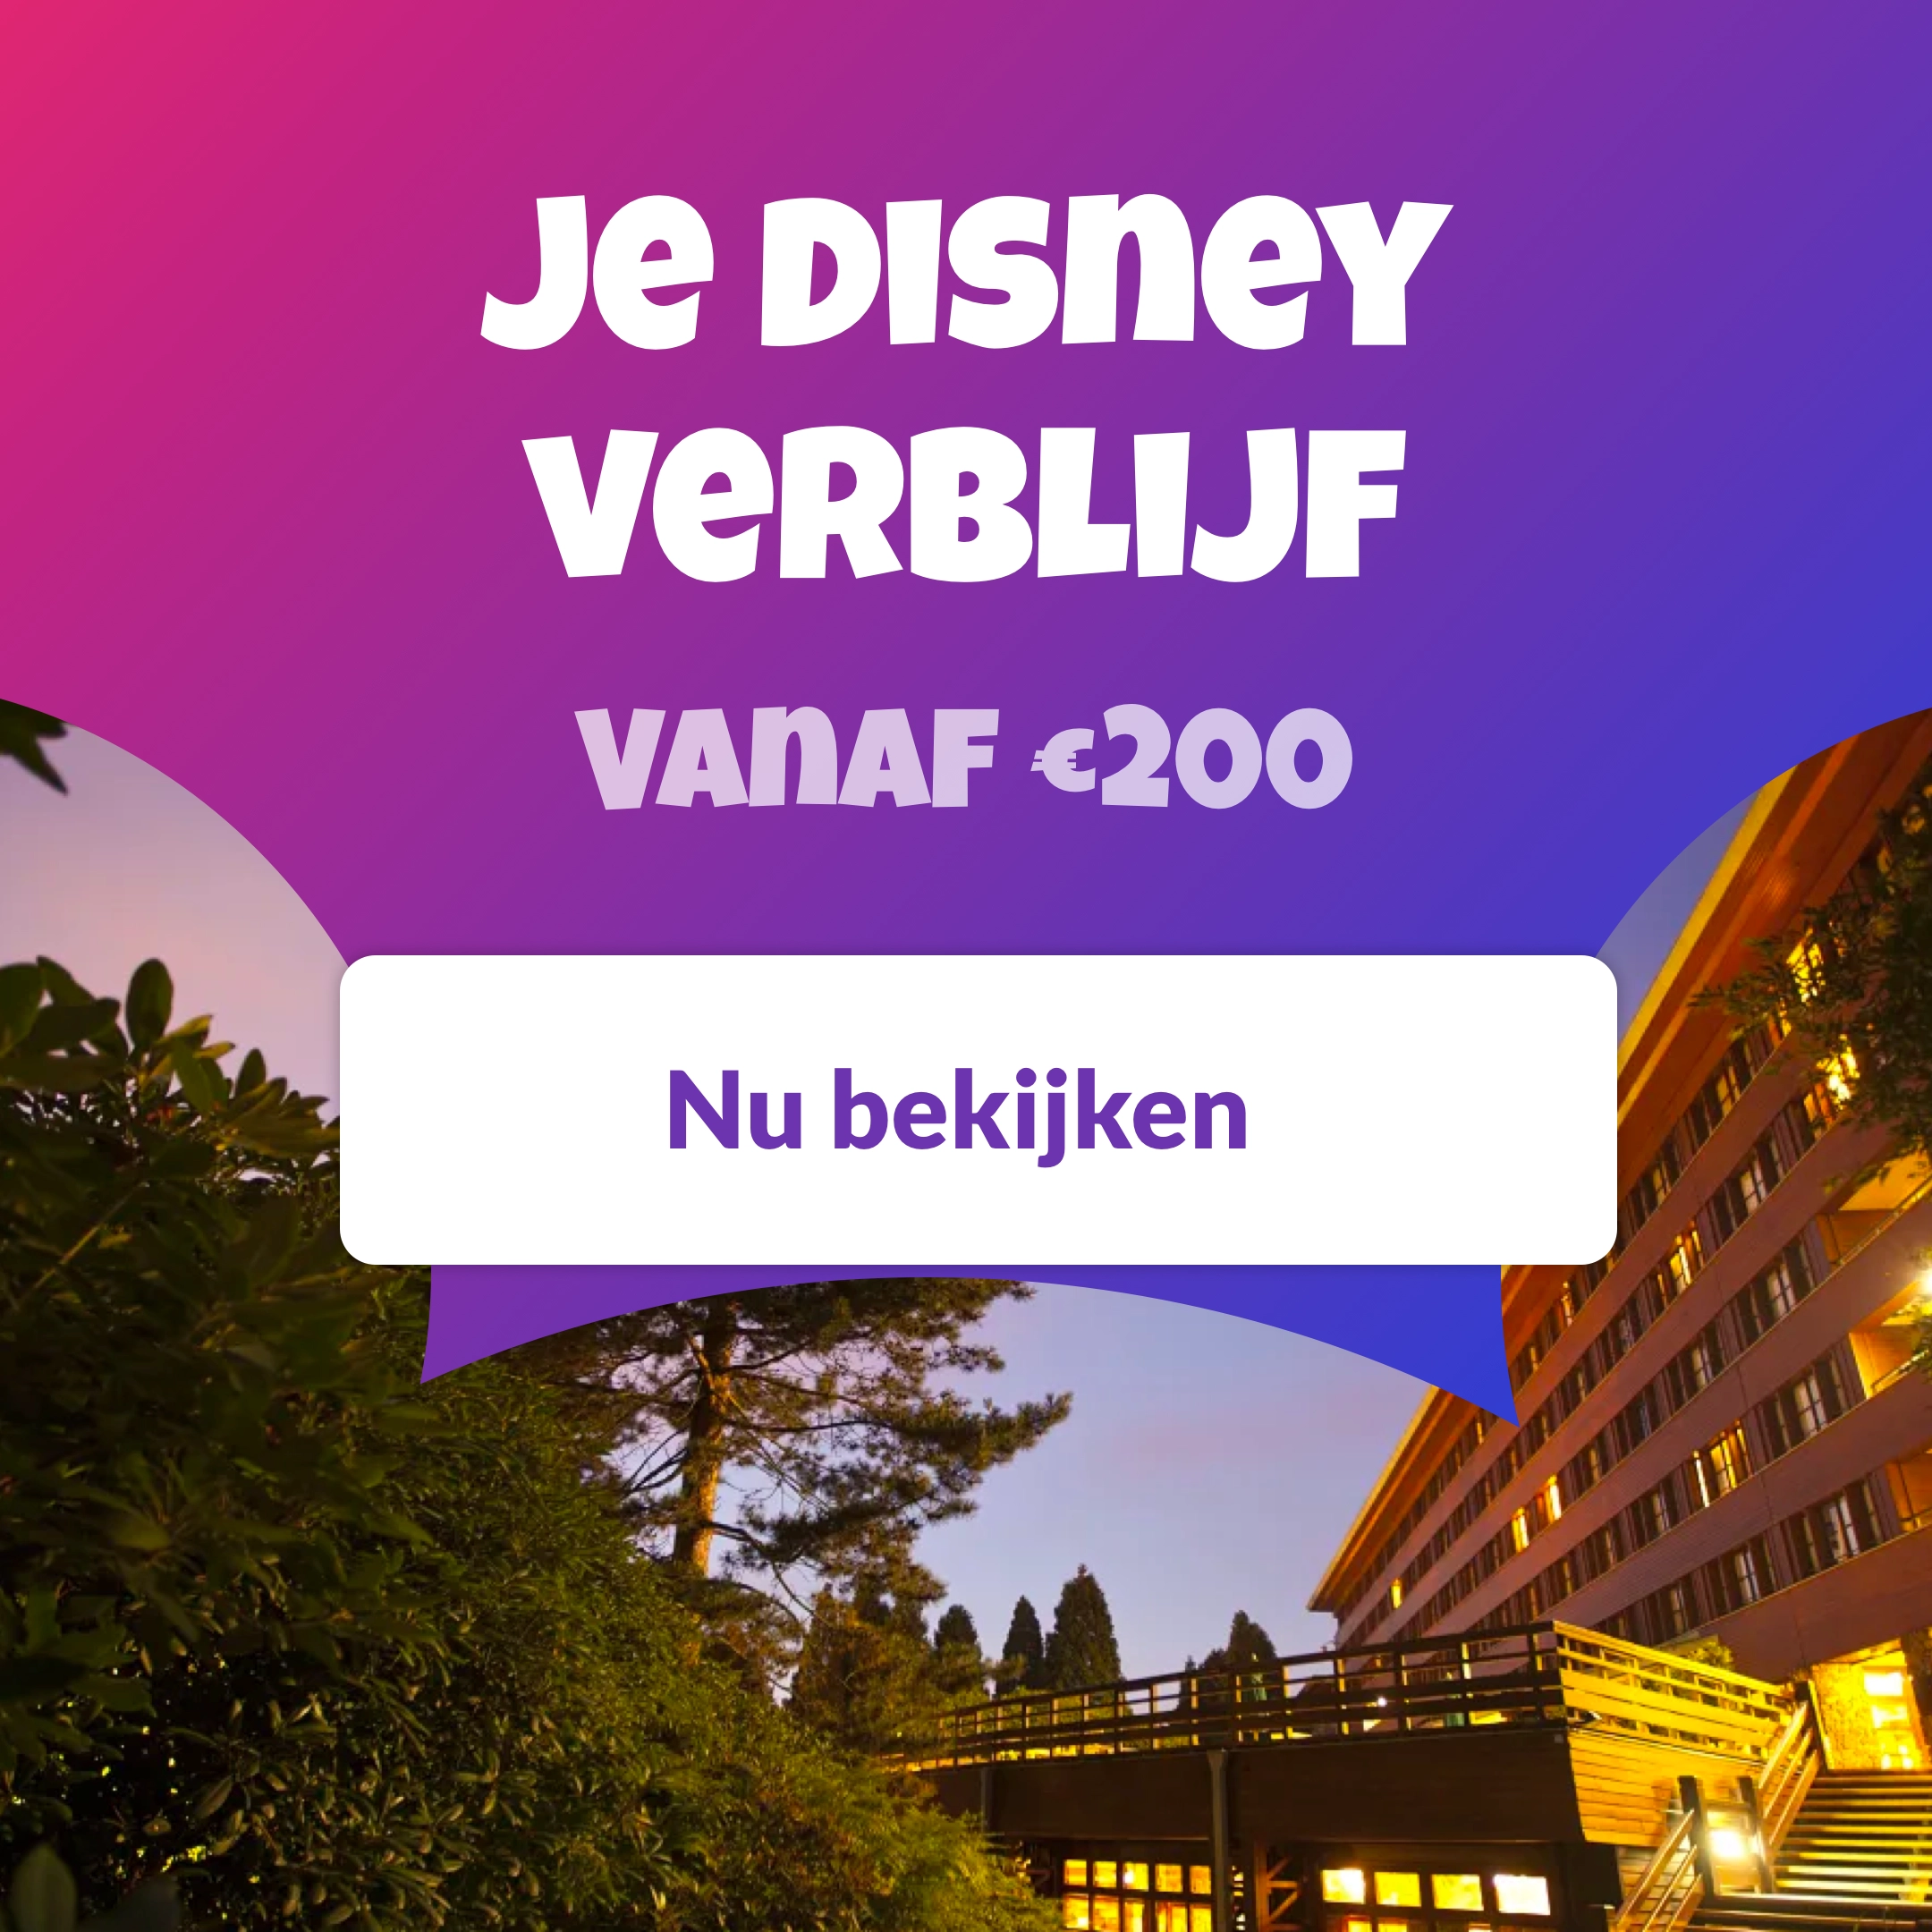 Je verblijf in Disneyland Paris vanaf €200